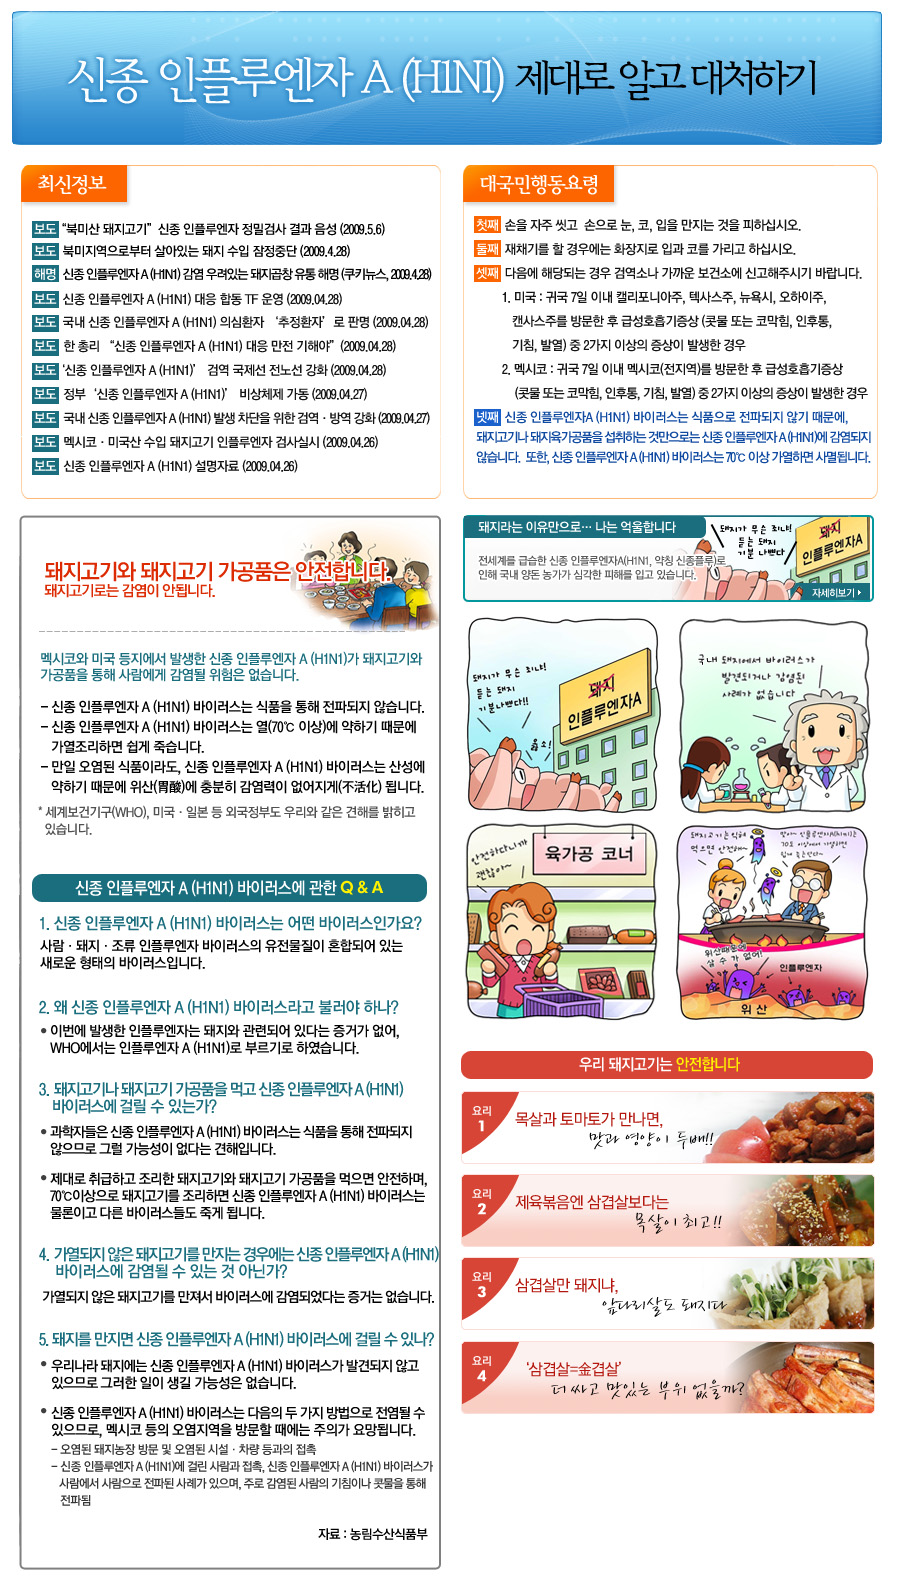 '신종인플루엔자 제대로 알고 대처하기' 홍보 자료물